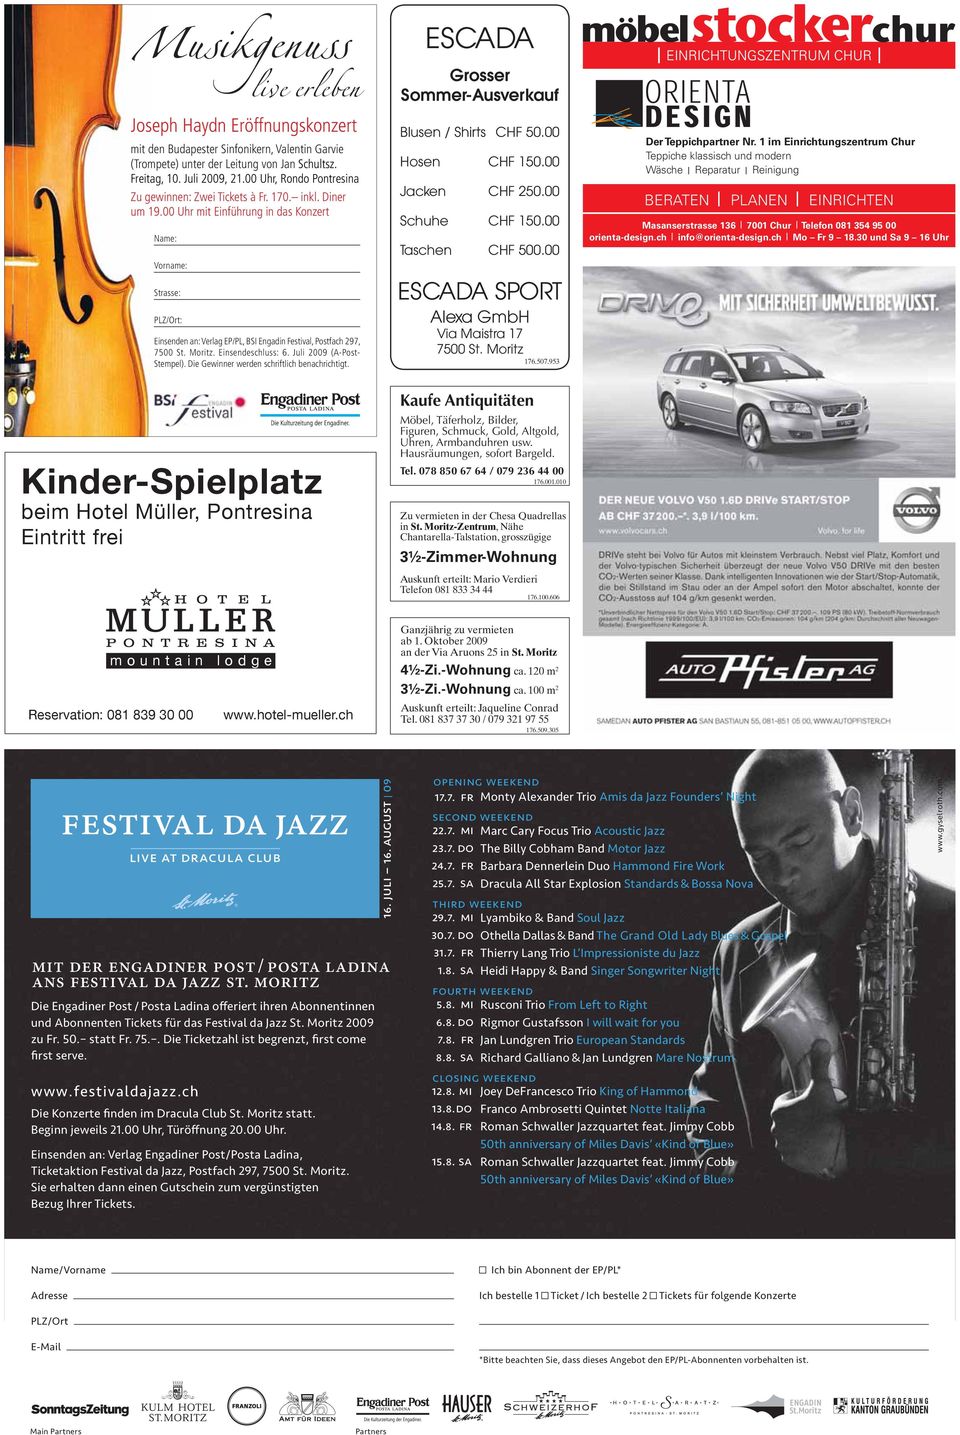 00 Uhr mit Einführung in das Konzert Name: Vorname: Strasse: PLZ/Ort: Einsenden an: Verlag EP/PL, BSI Engadin Festival, Postfach 297, 7500 St. Moritz. Einsendeschluss: 6. Juli 2009 (A-Post- Stempel).